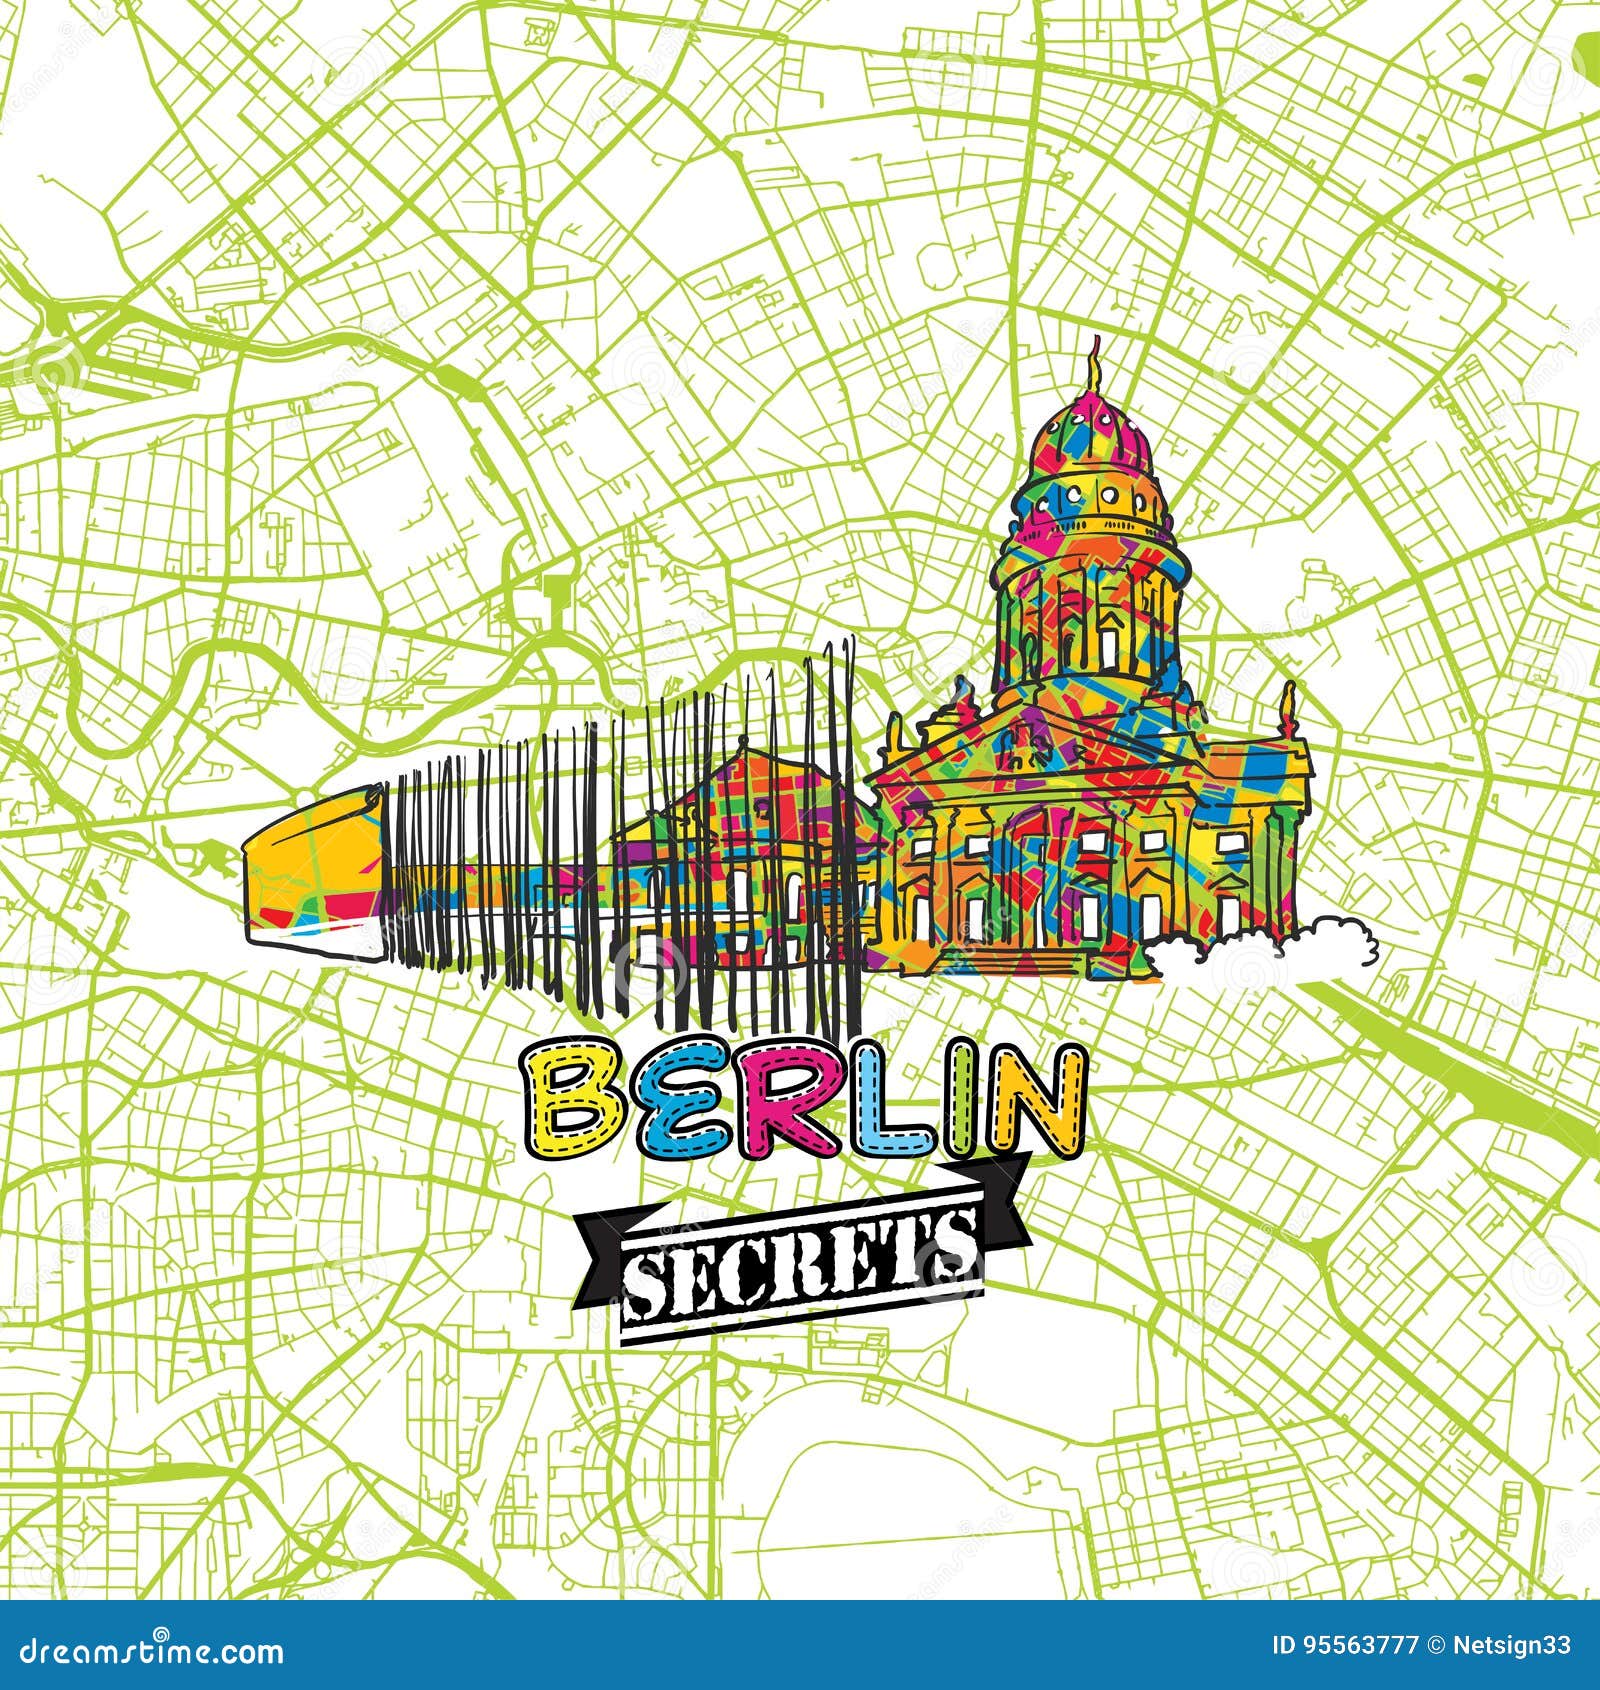 Berlin of secrets 15 Secret